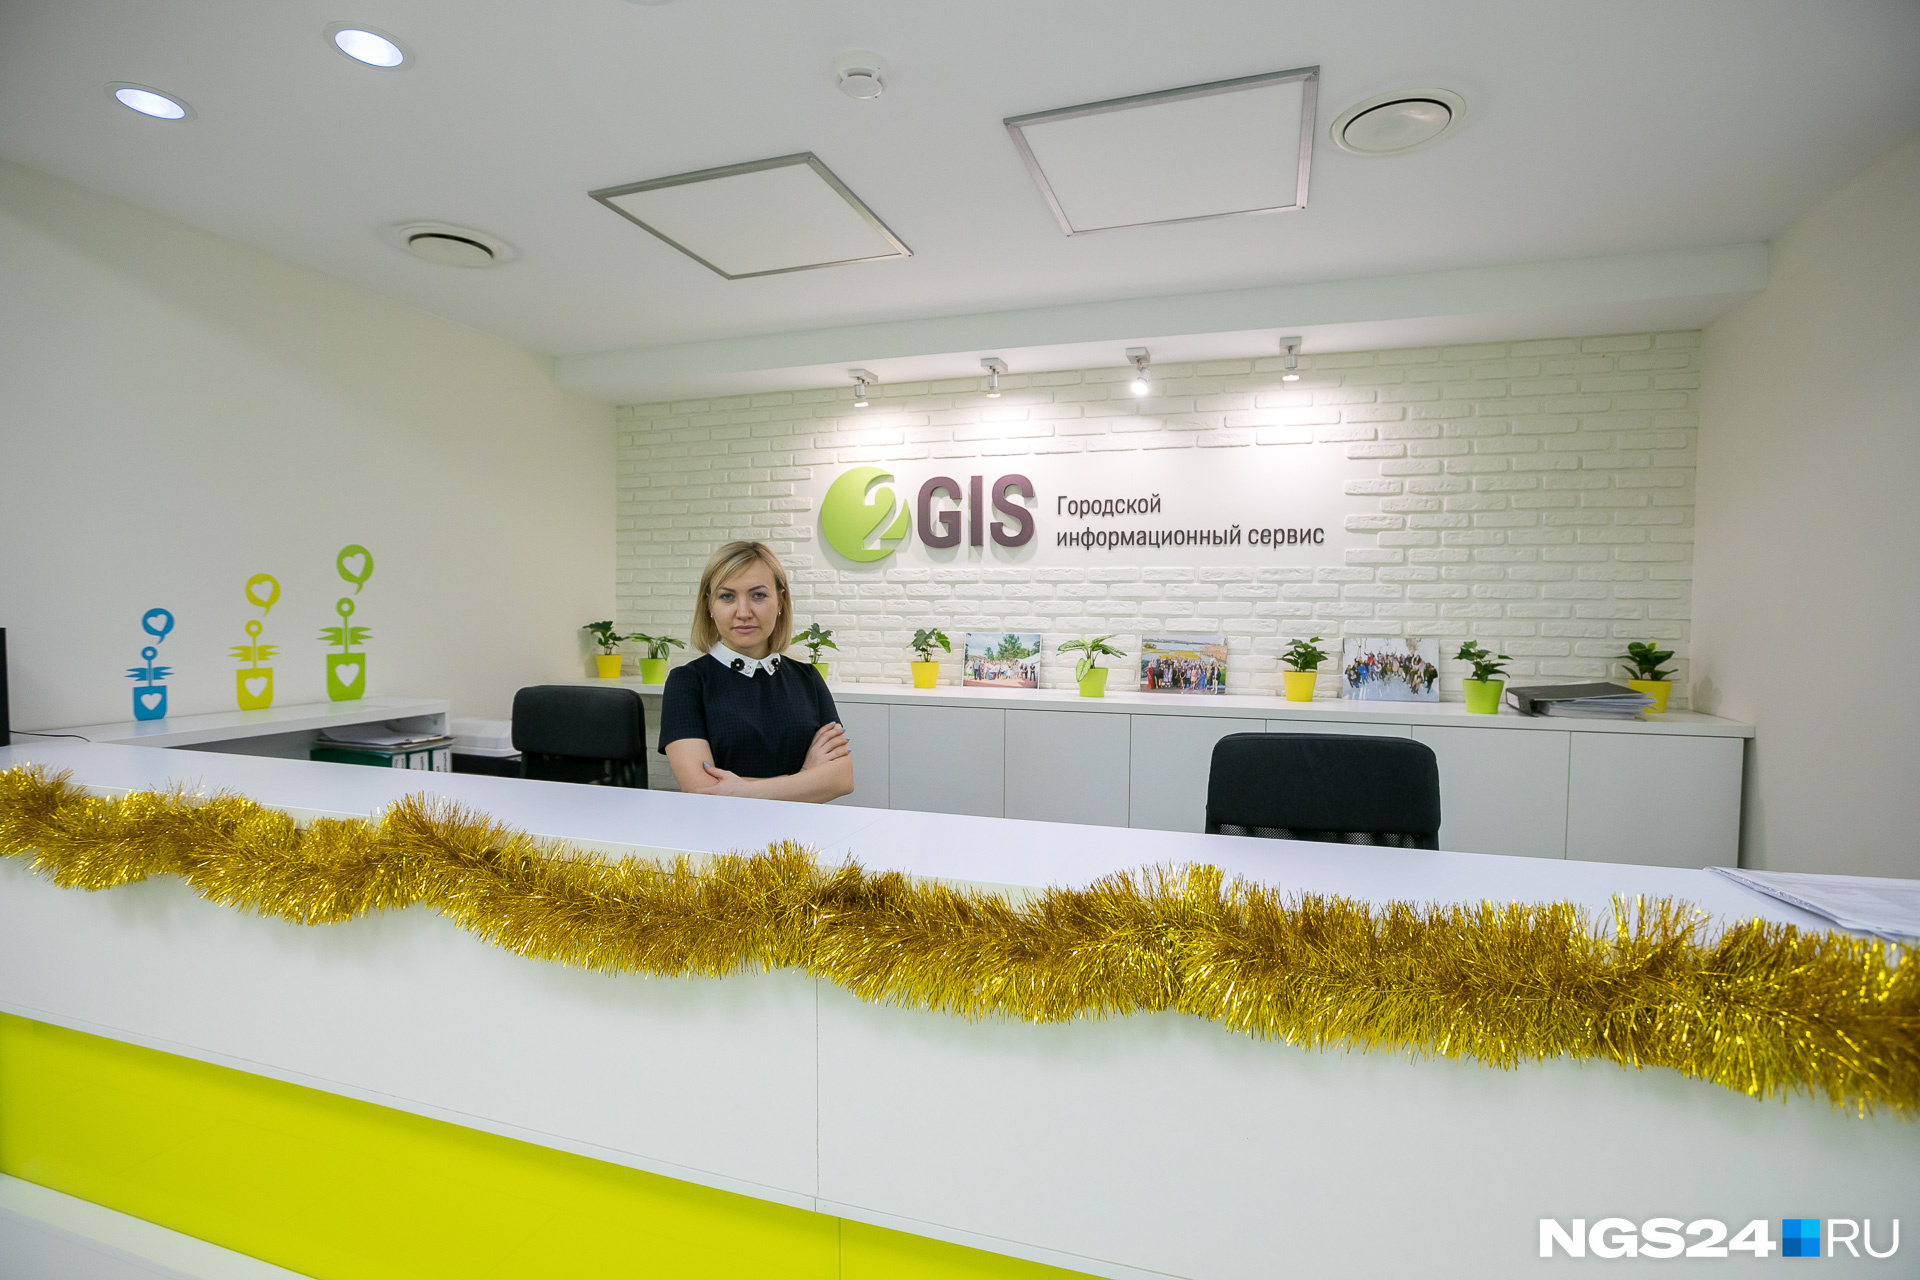 Дизайн офиса 2GIS выполнен в фирменных жёлто-зелёных цветах